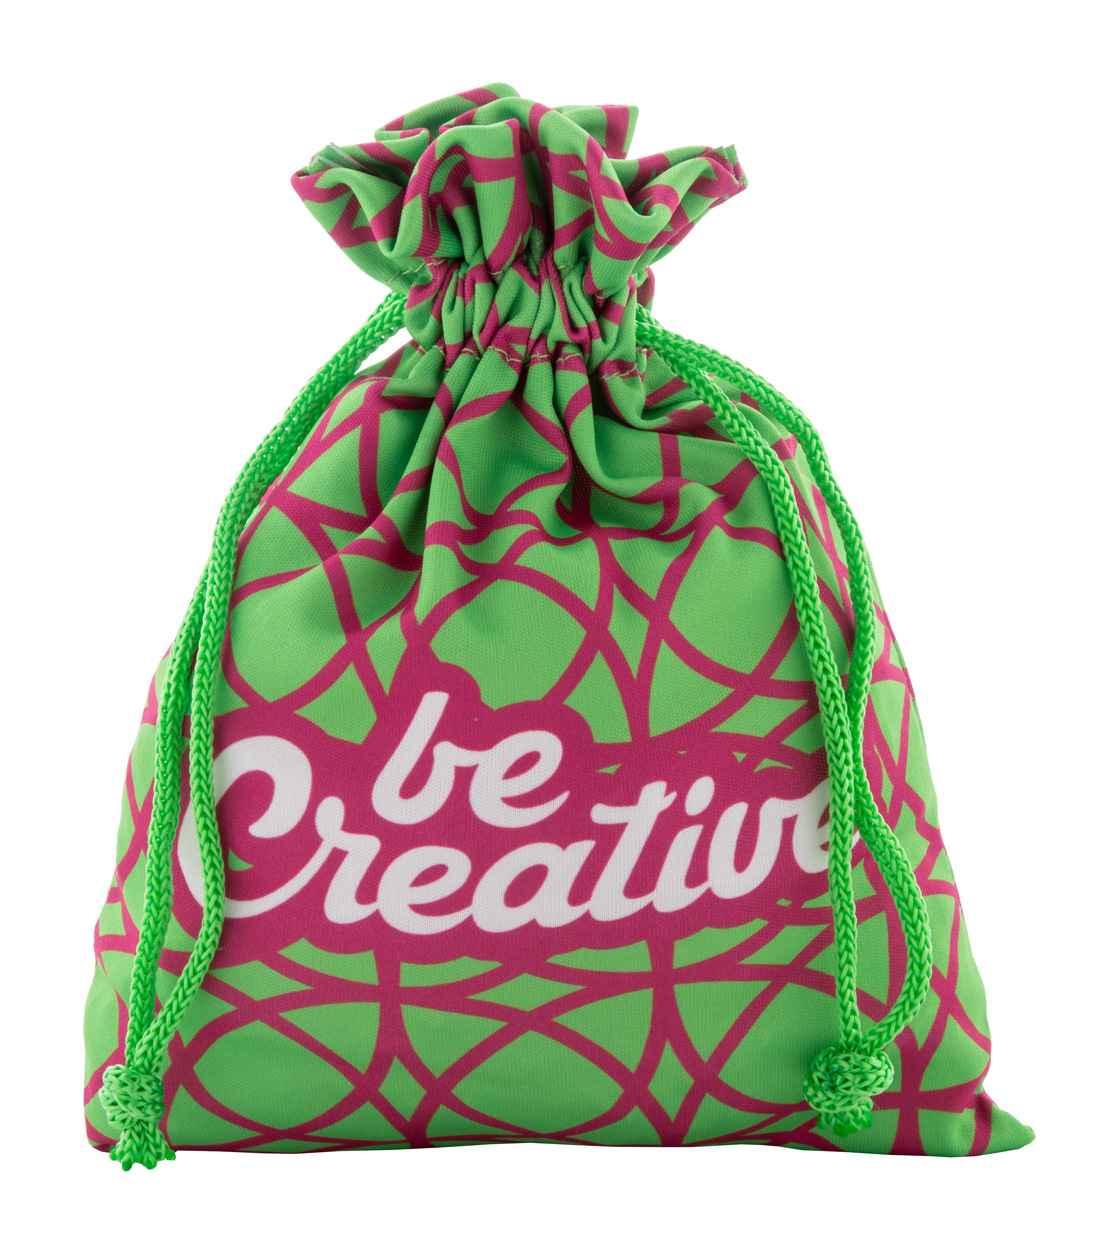 SuboGift M custom gift bag, medium - green